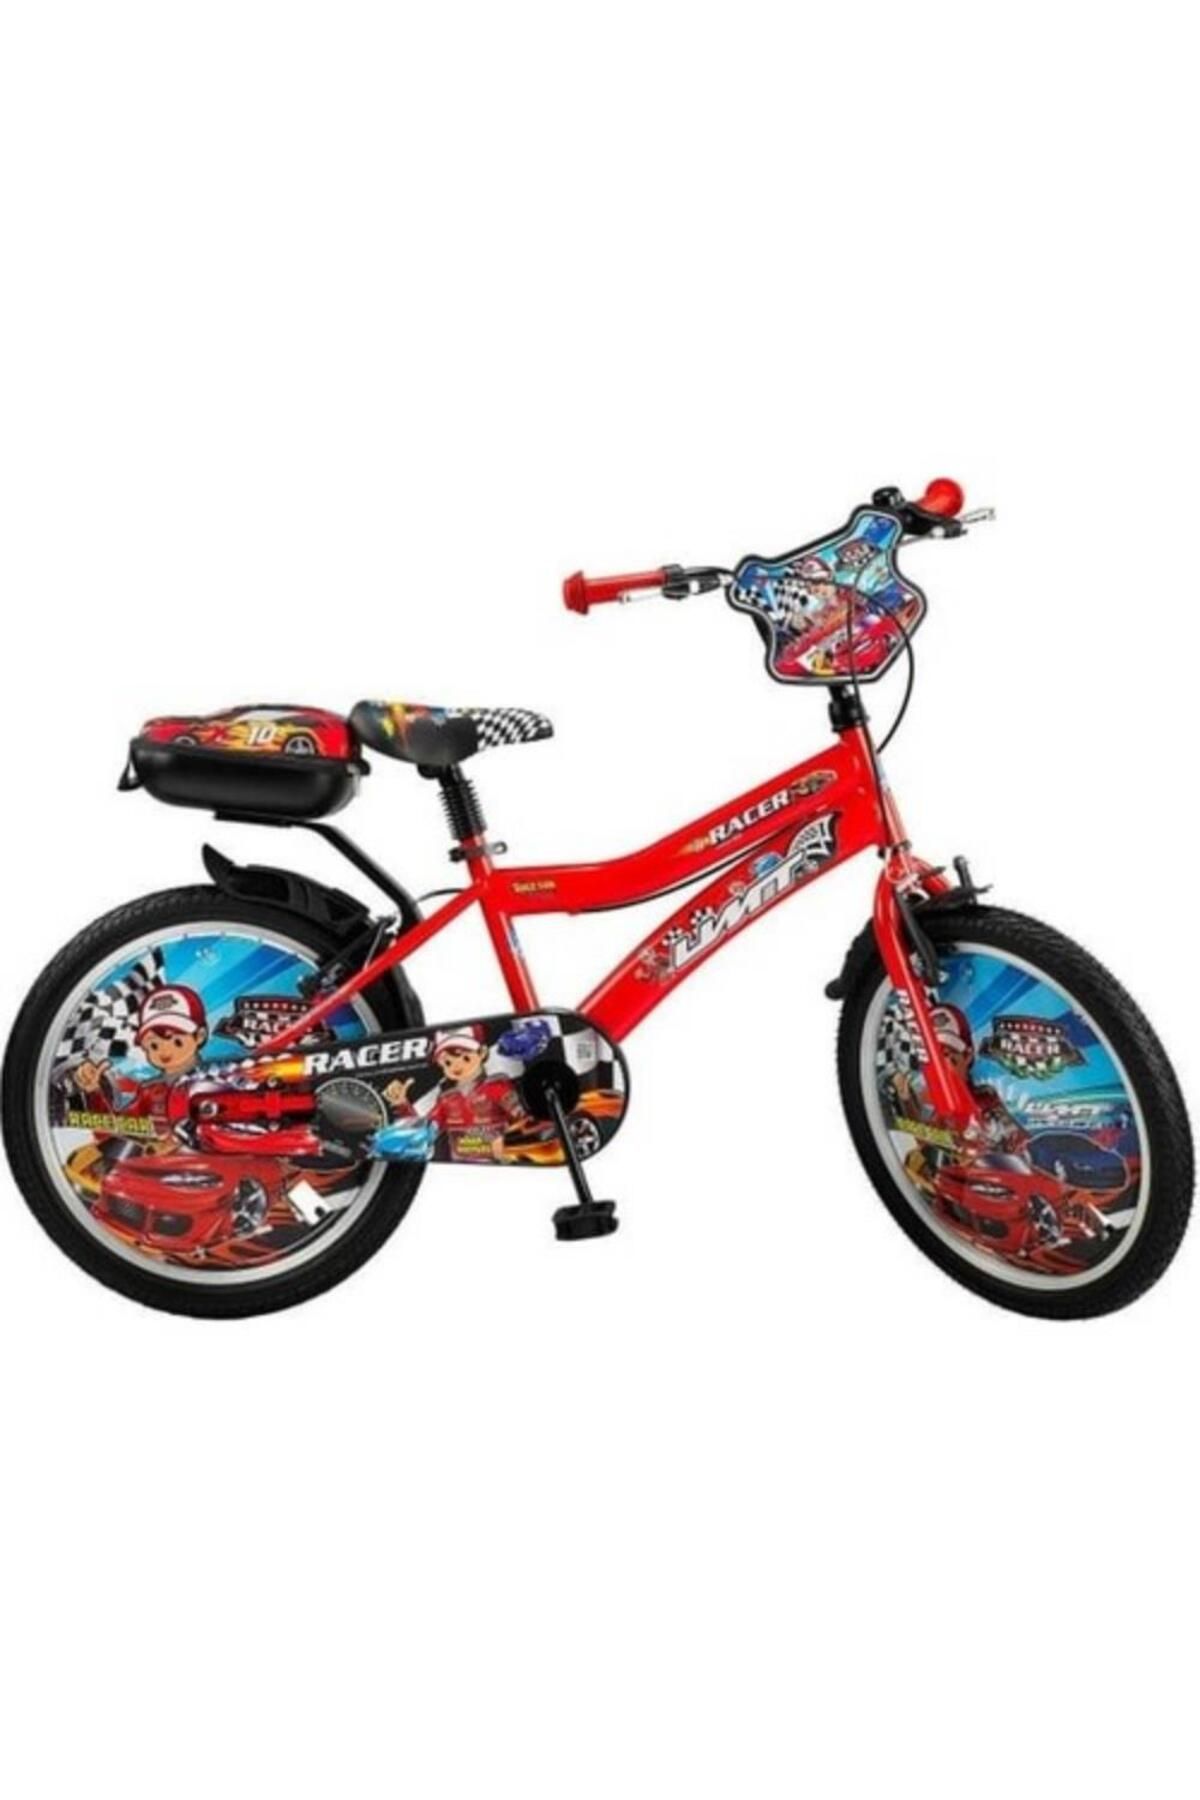 Ümit Racer 14 Jant Çocuk Bisikleti Kırmızı 1448